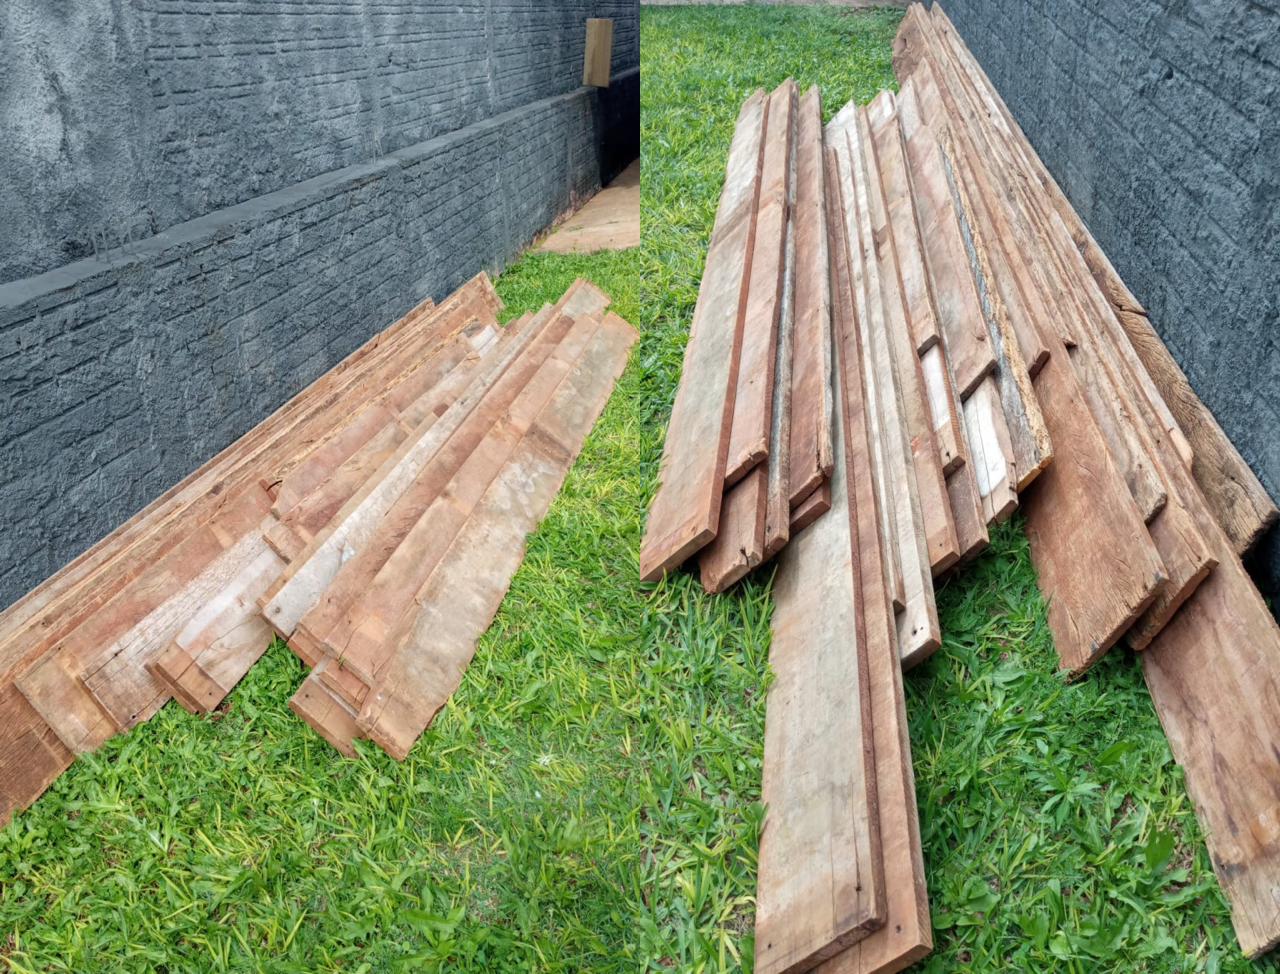 Polícia Civil conclui investigação e restitui madeiras furtadas em Francisco Alves 